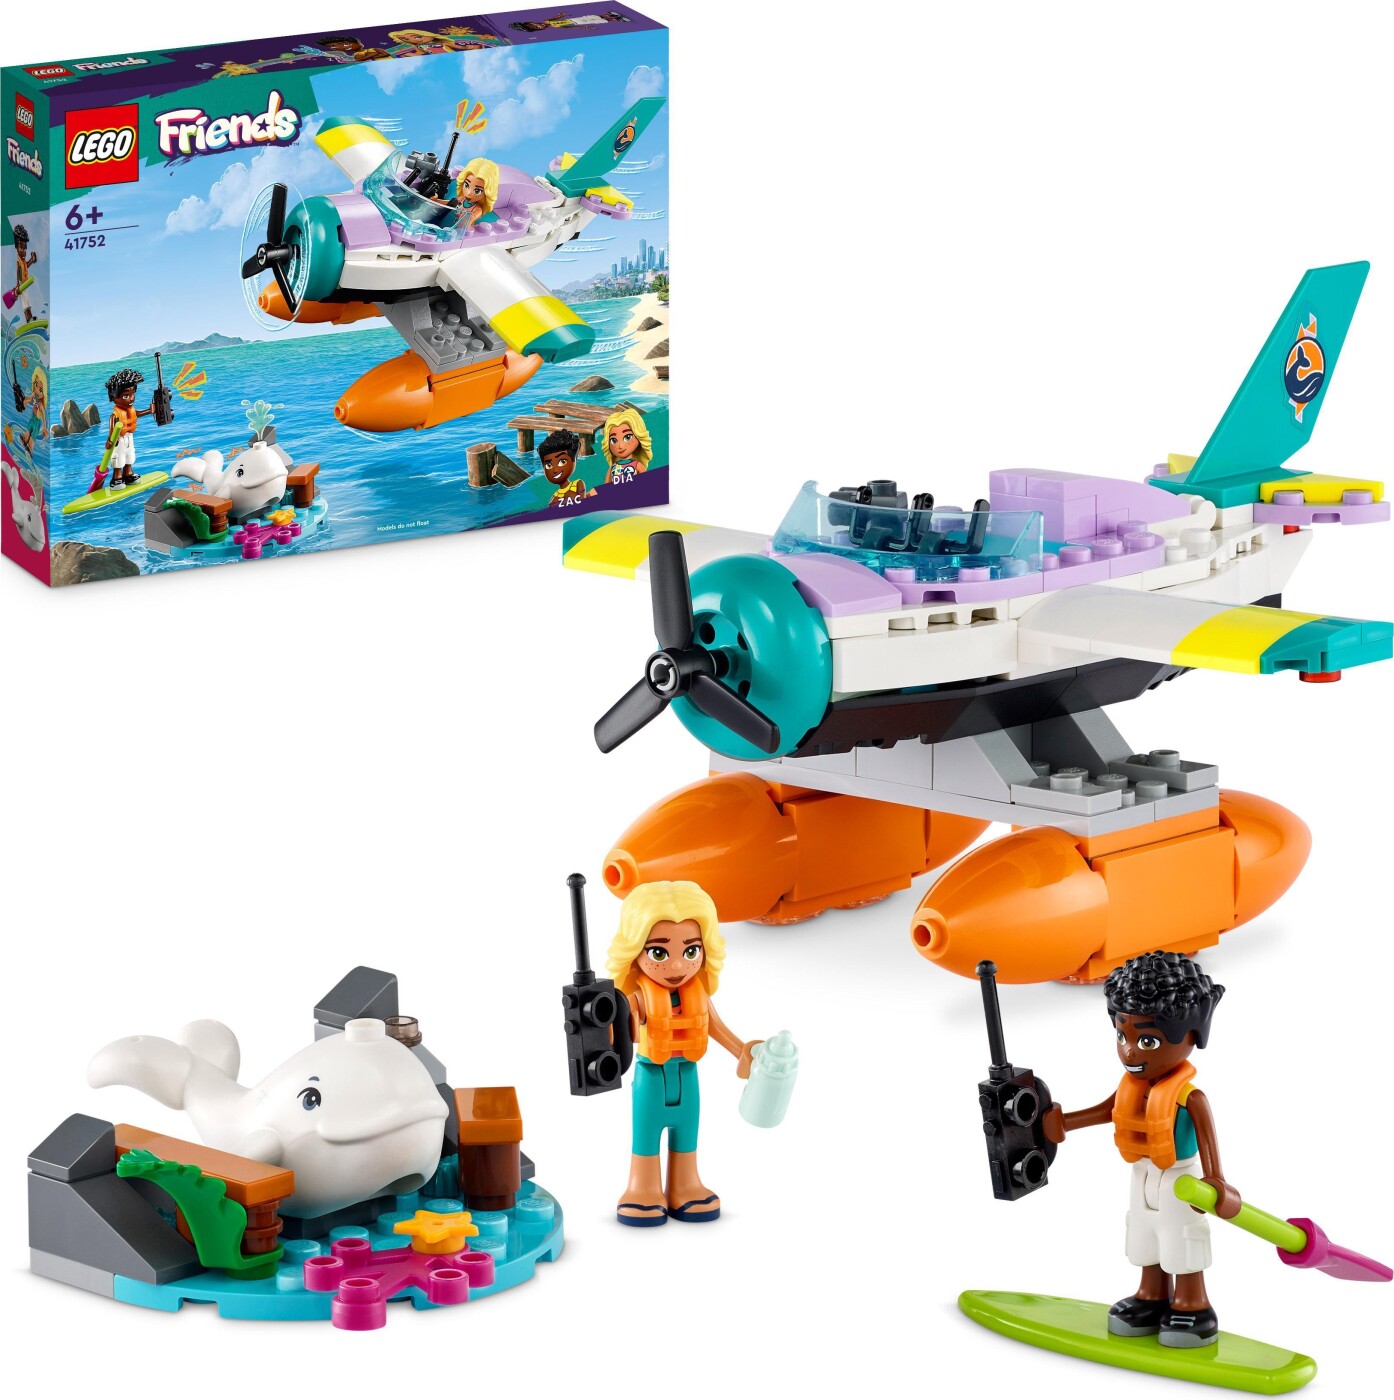 Lego - Redningsfly - 41752 | Se tilbud og køb på Gucca.dk